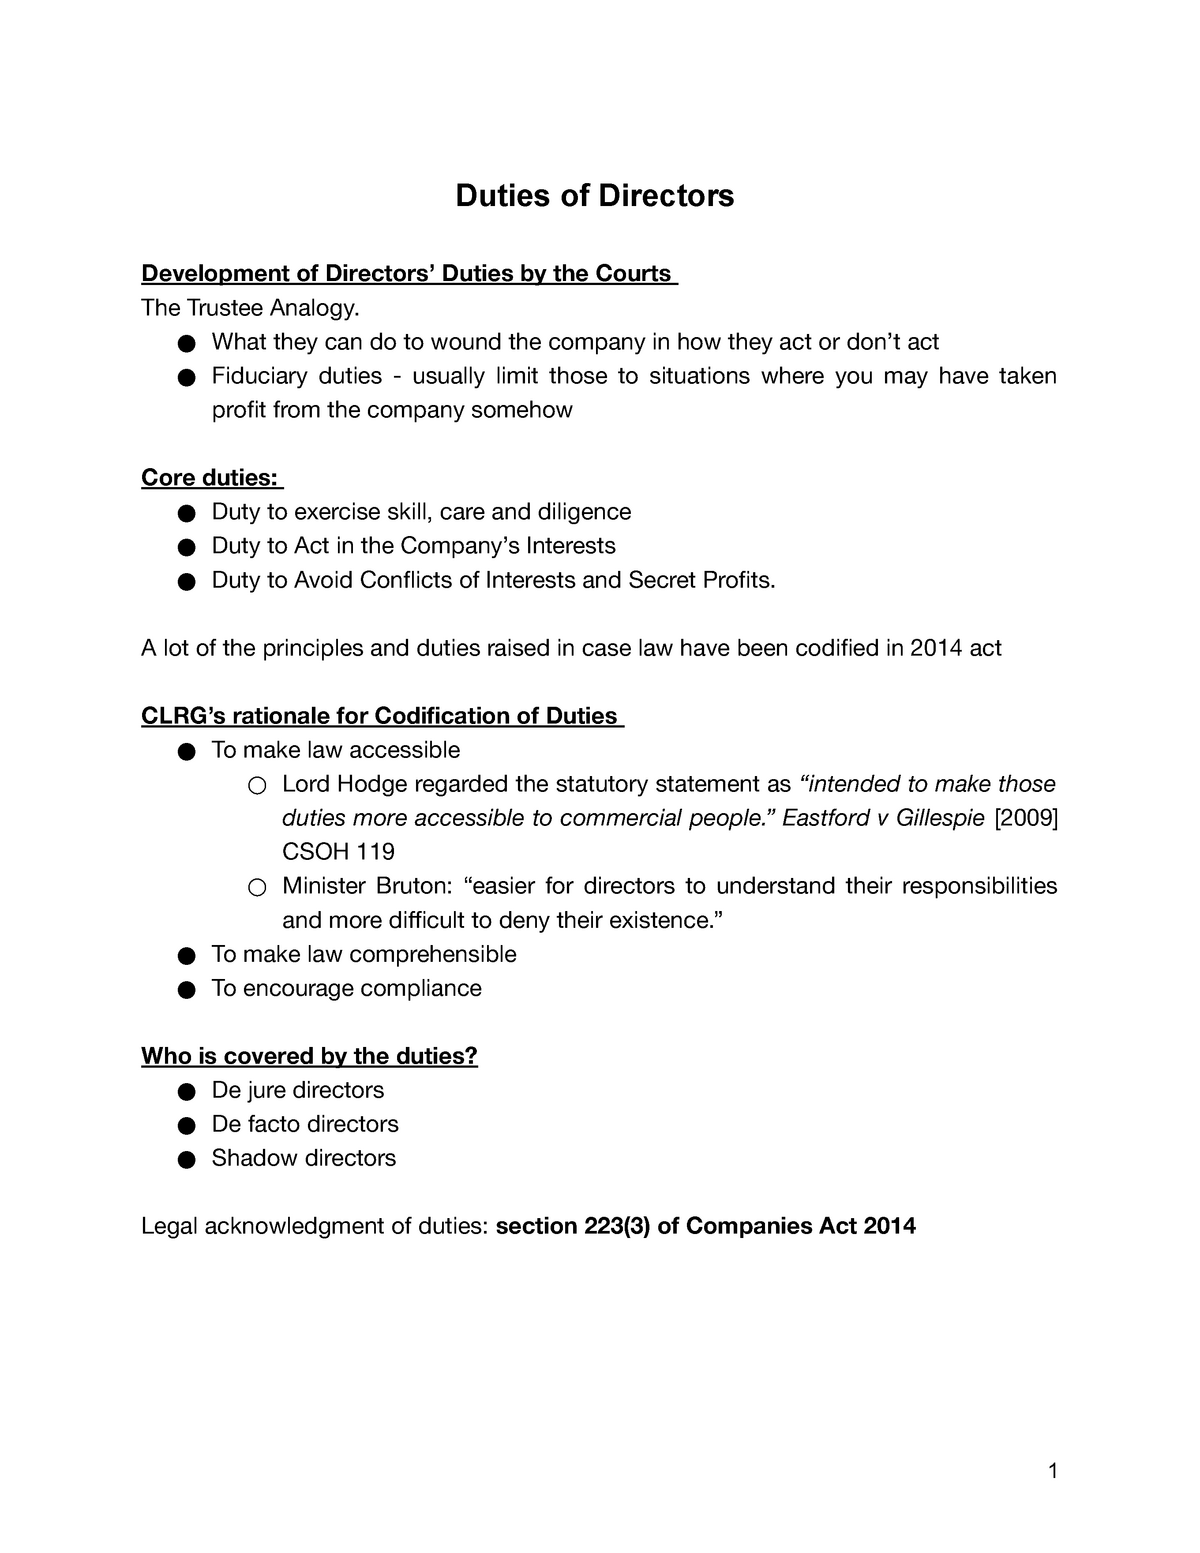 Topic 6 - Duties of Directors - StuDocu